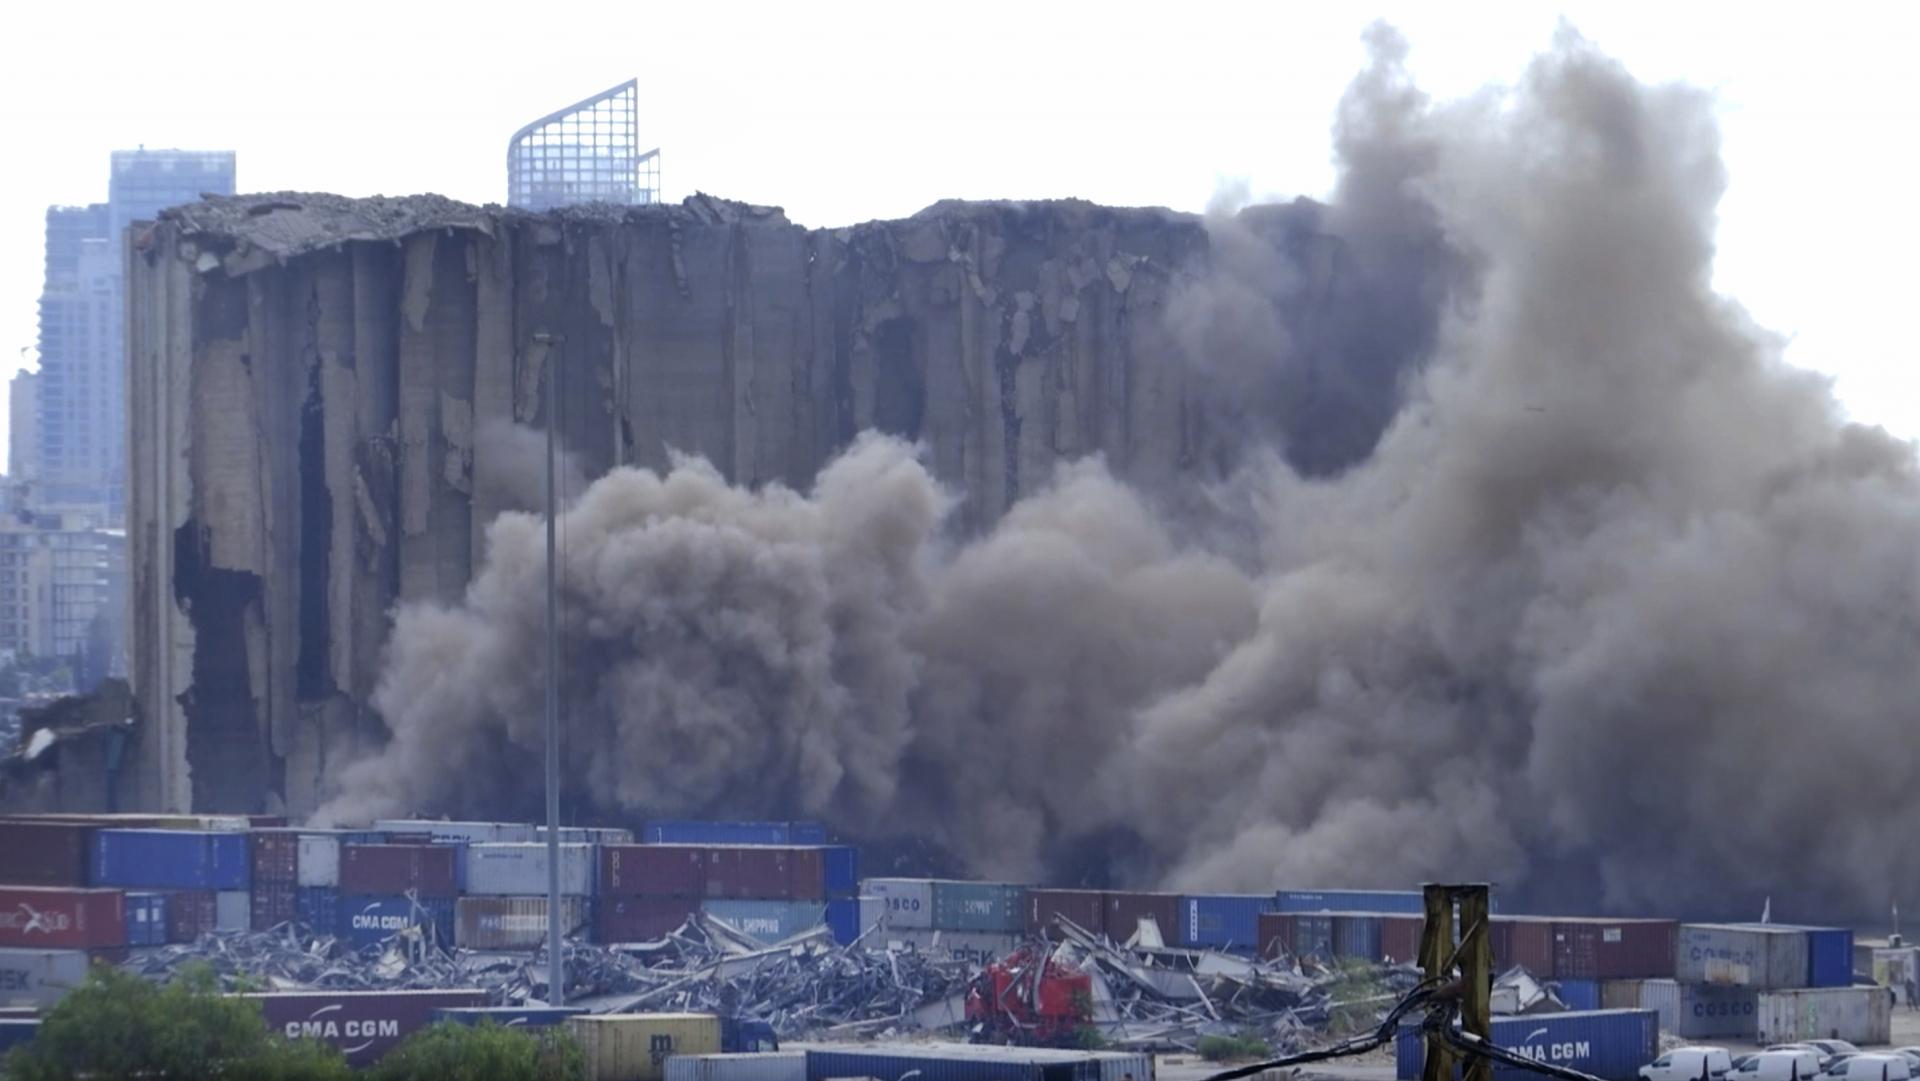 Časť sila v bejrútskom prístave, ktorú poškodil výbuch v roku 2020, sa zrútila